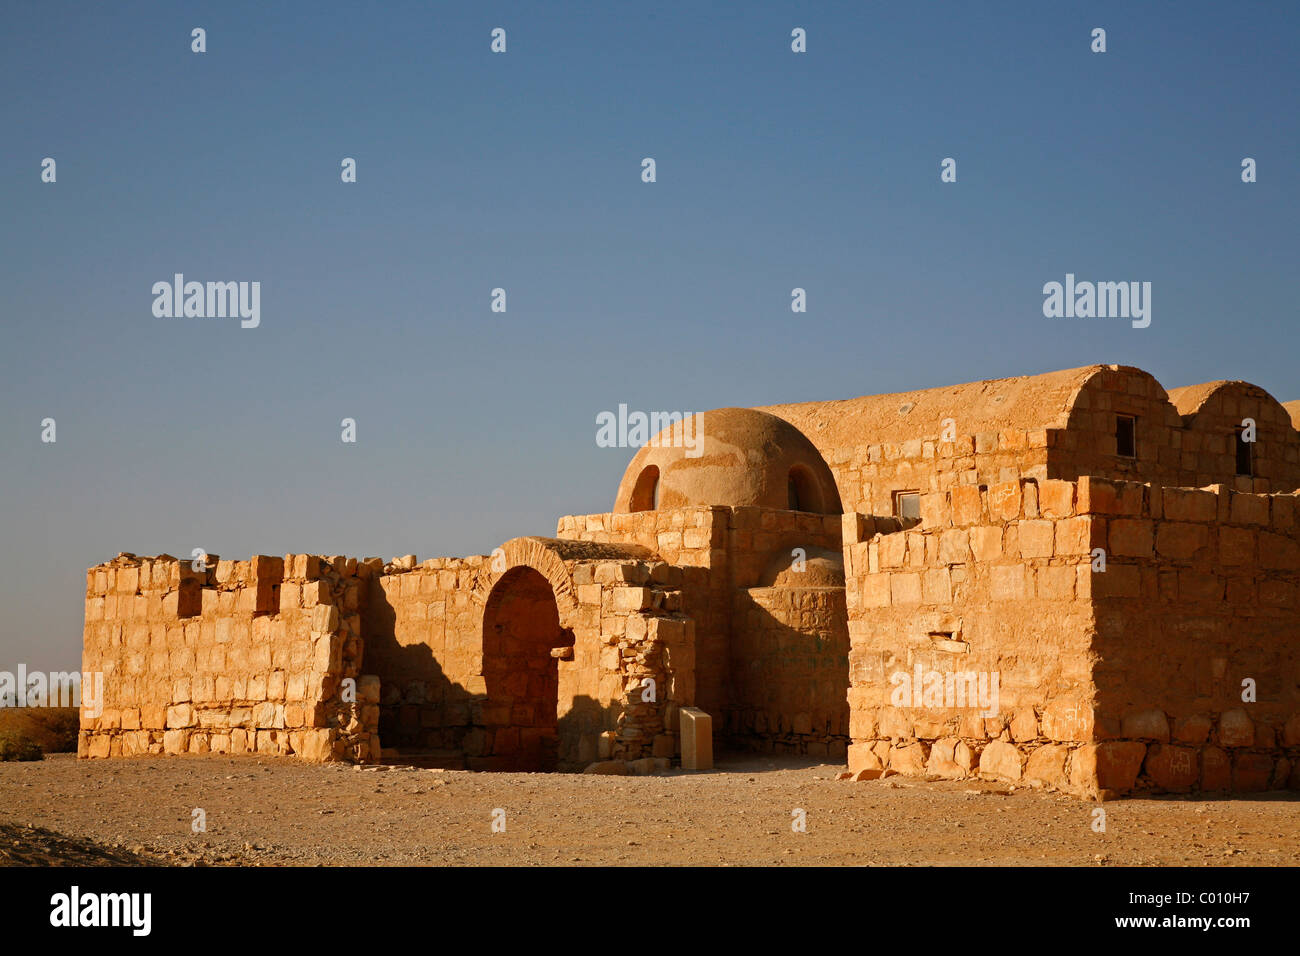 Castillo del desierto jordan fotografías e imágenes de alta resolución -  Alamy